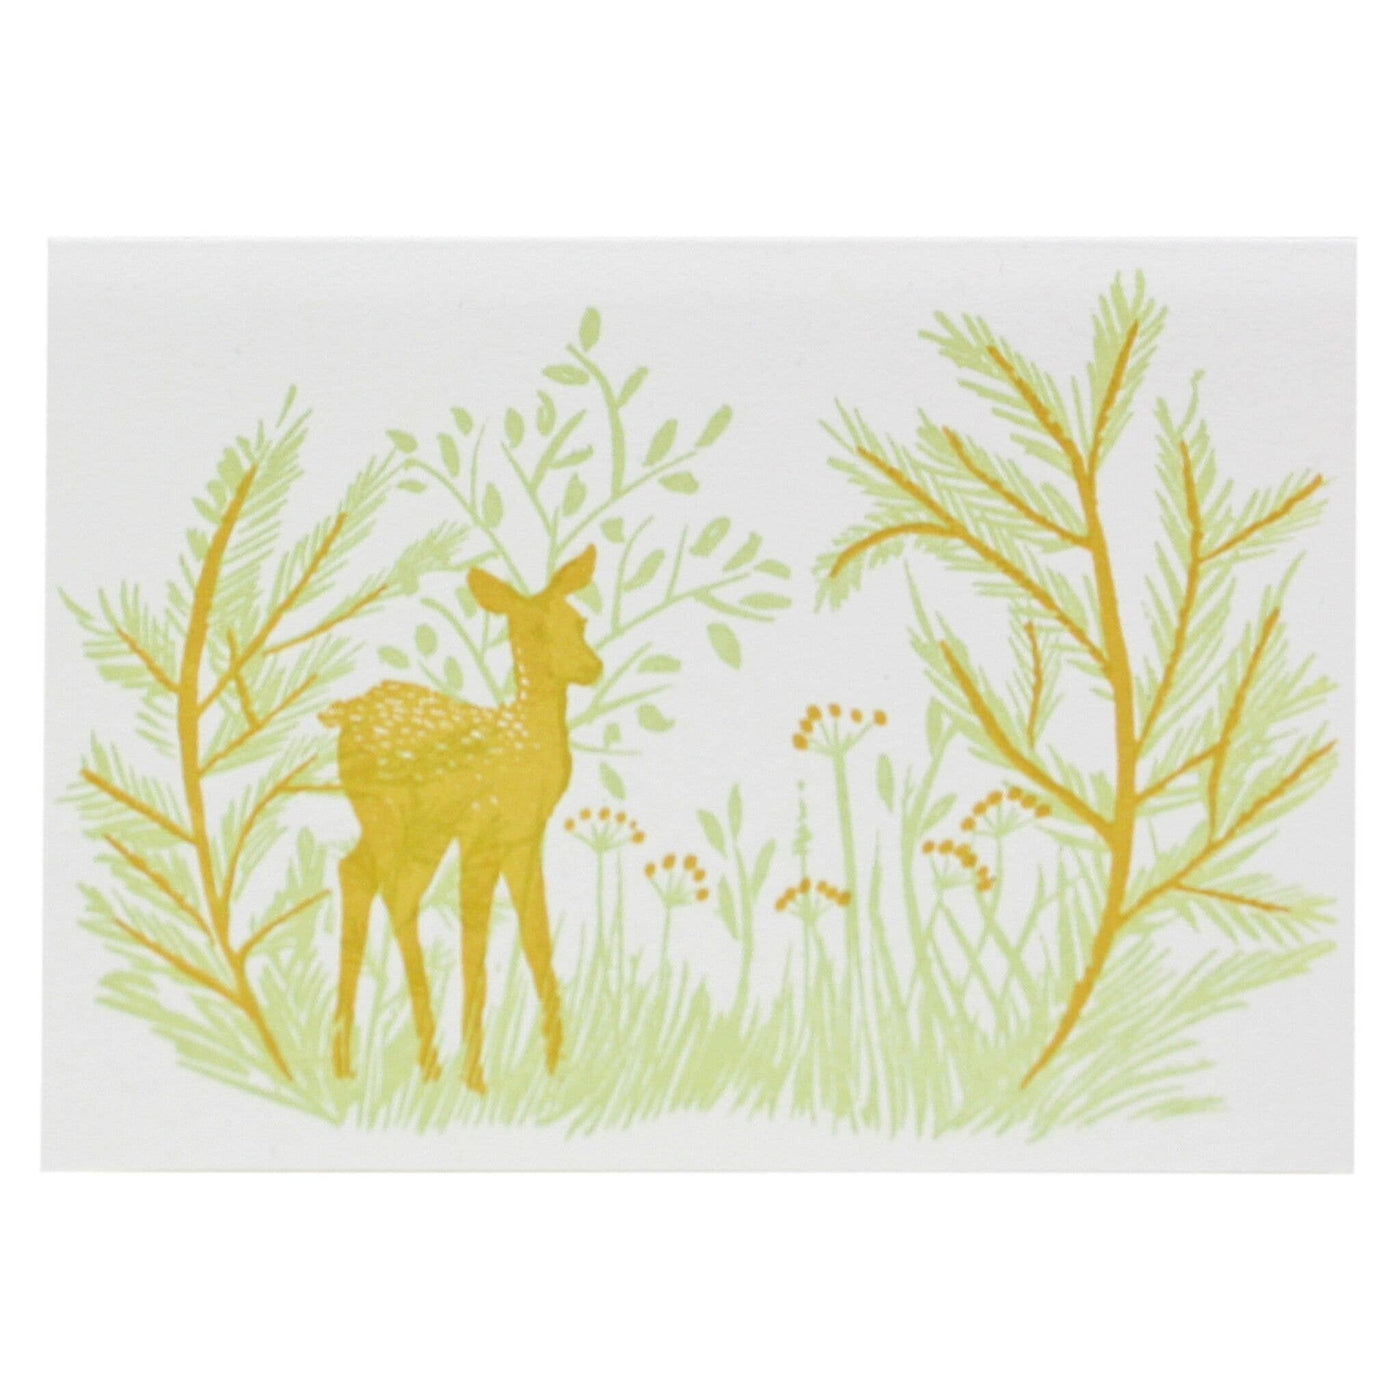 Mini Deer Enclosure Card